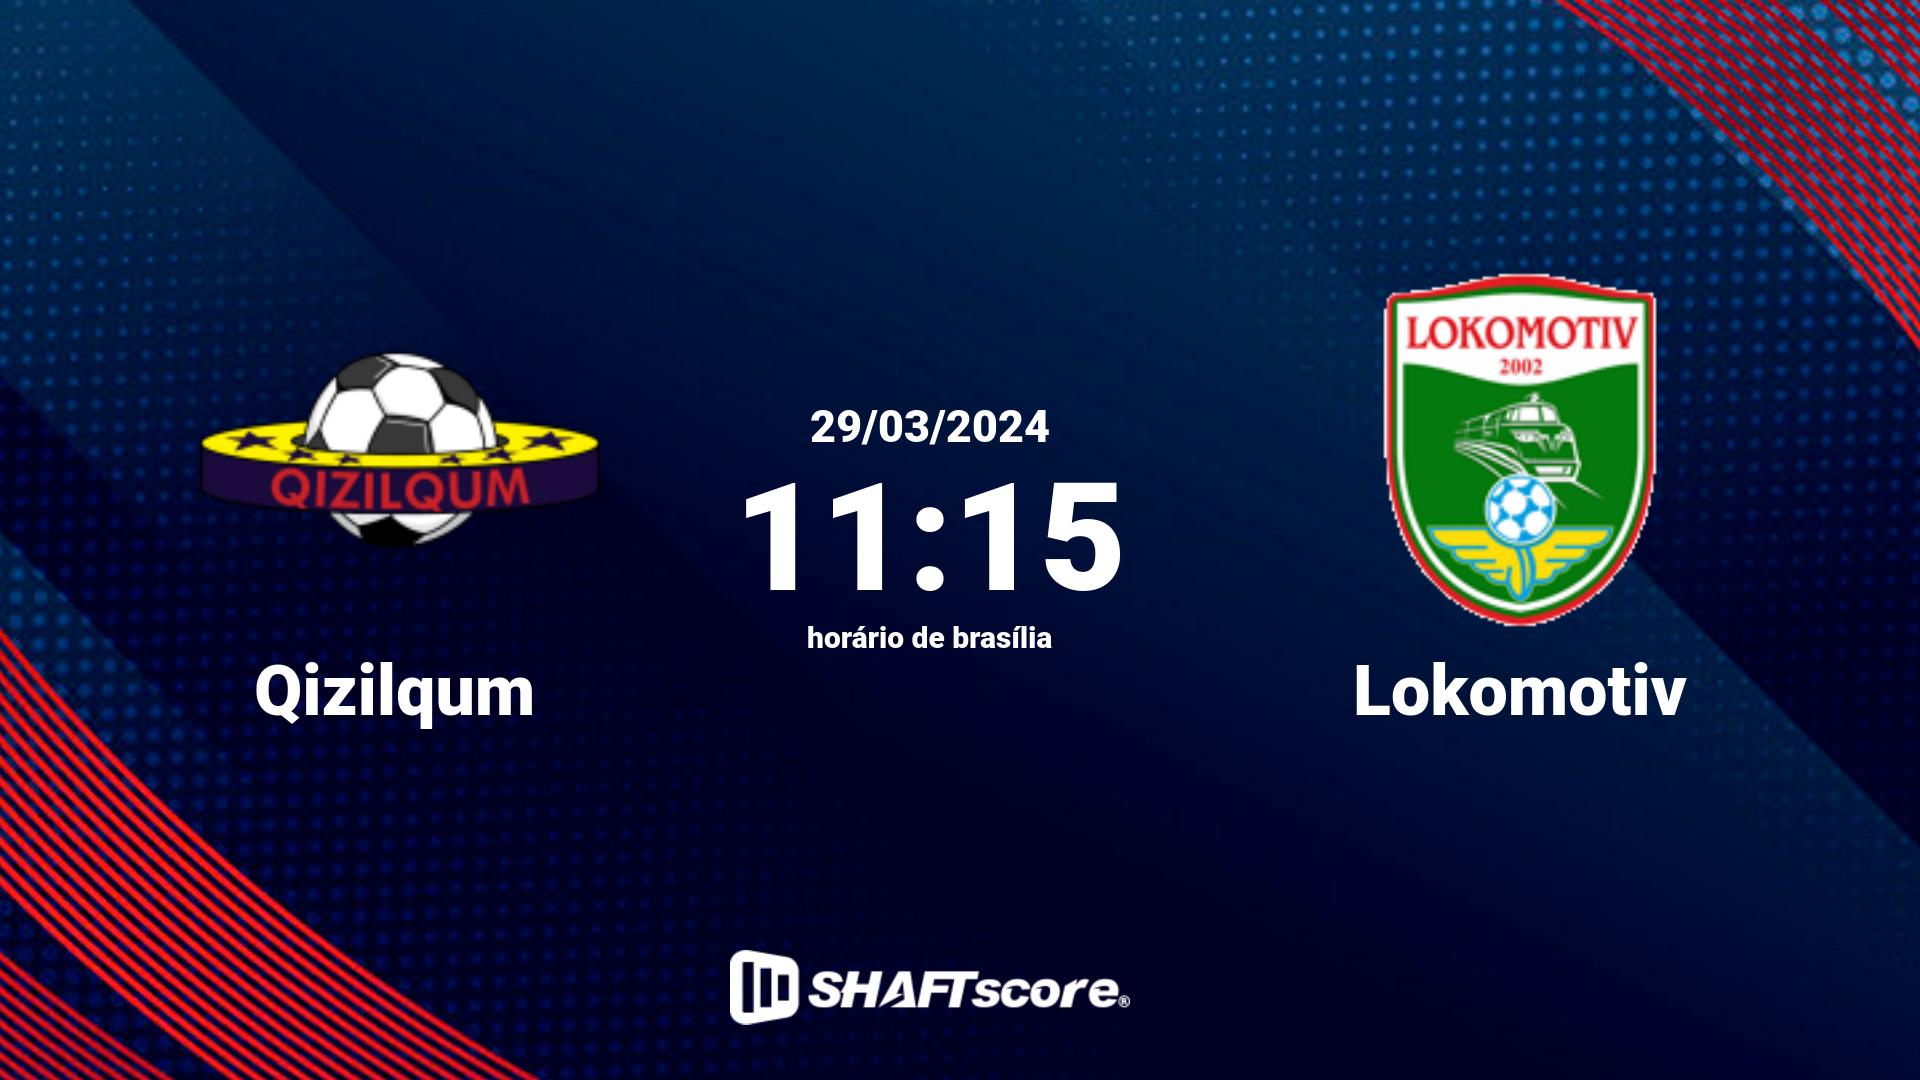 Estatísticas do jogo Qizilqum vs Lokomotiv 29.03 11:15